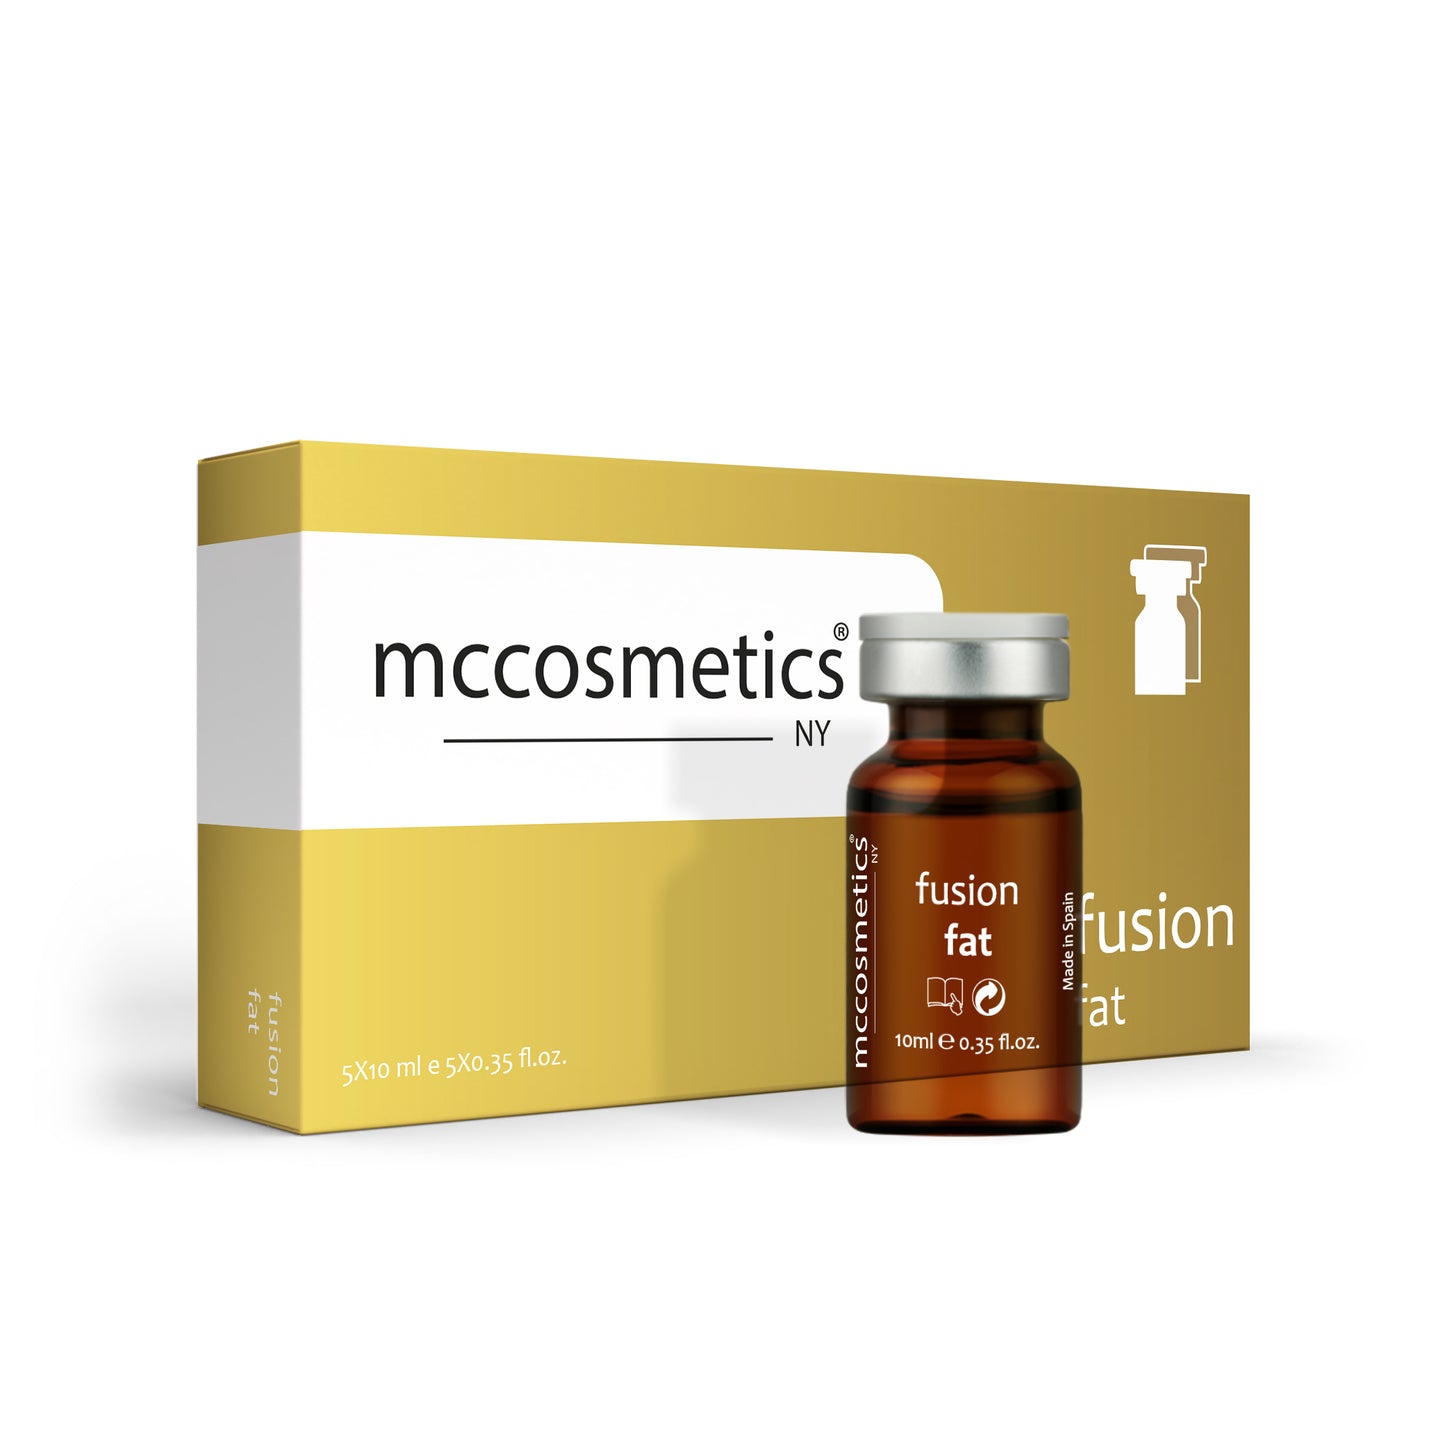 MCCosmetics NY | Fusion Fat